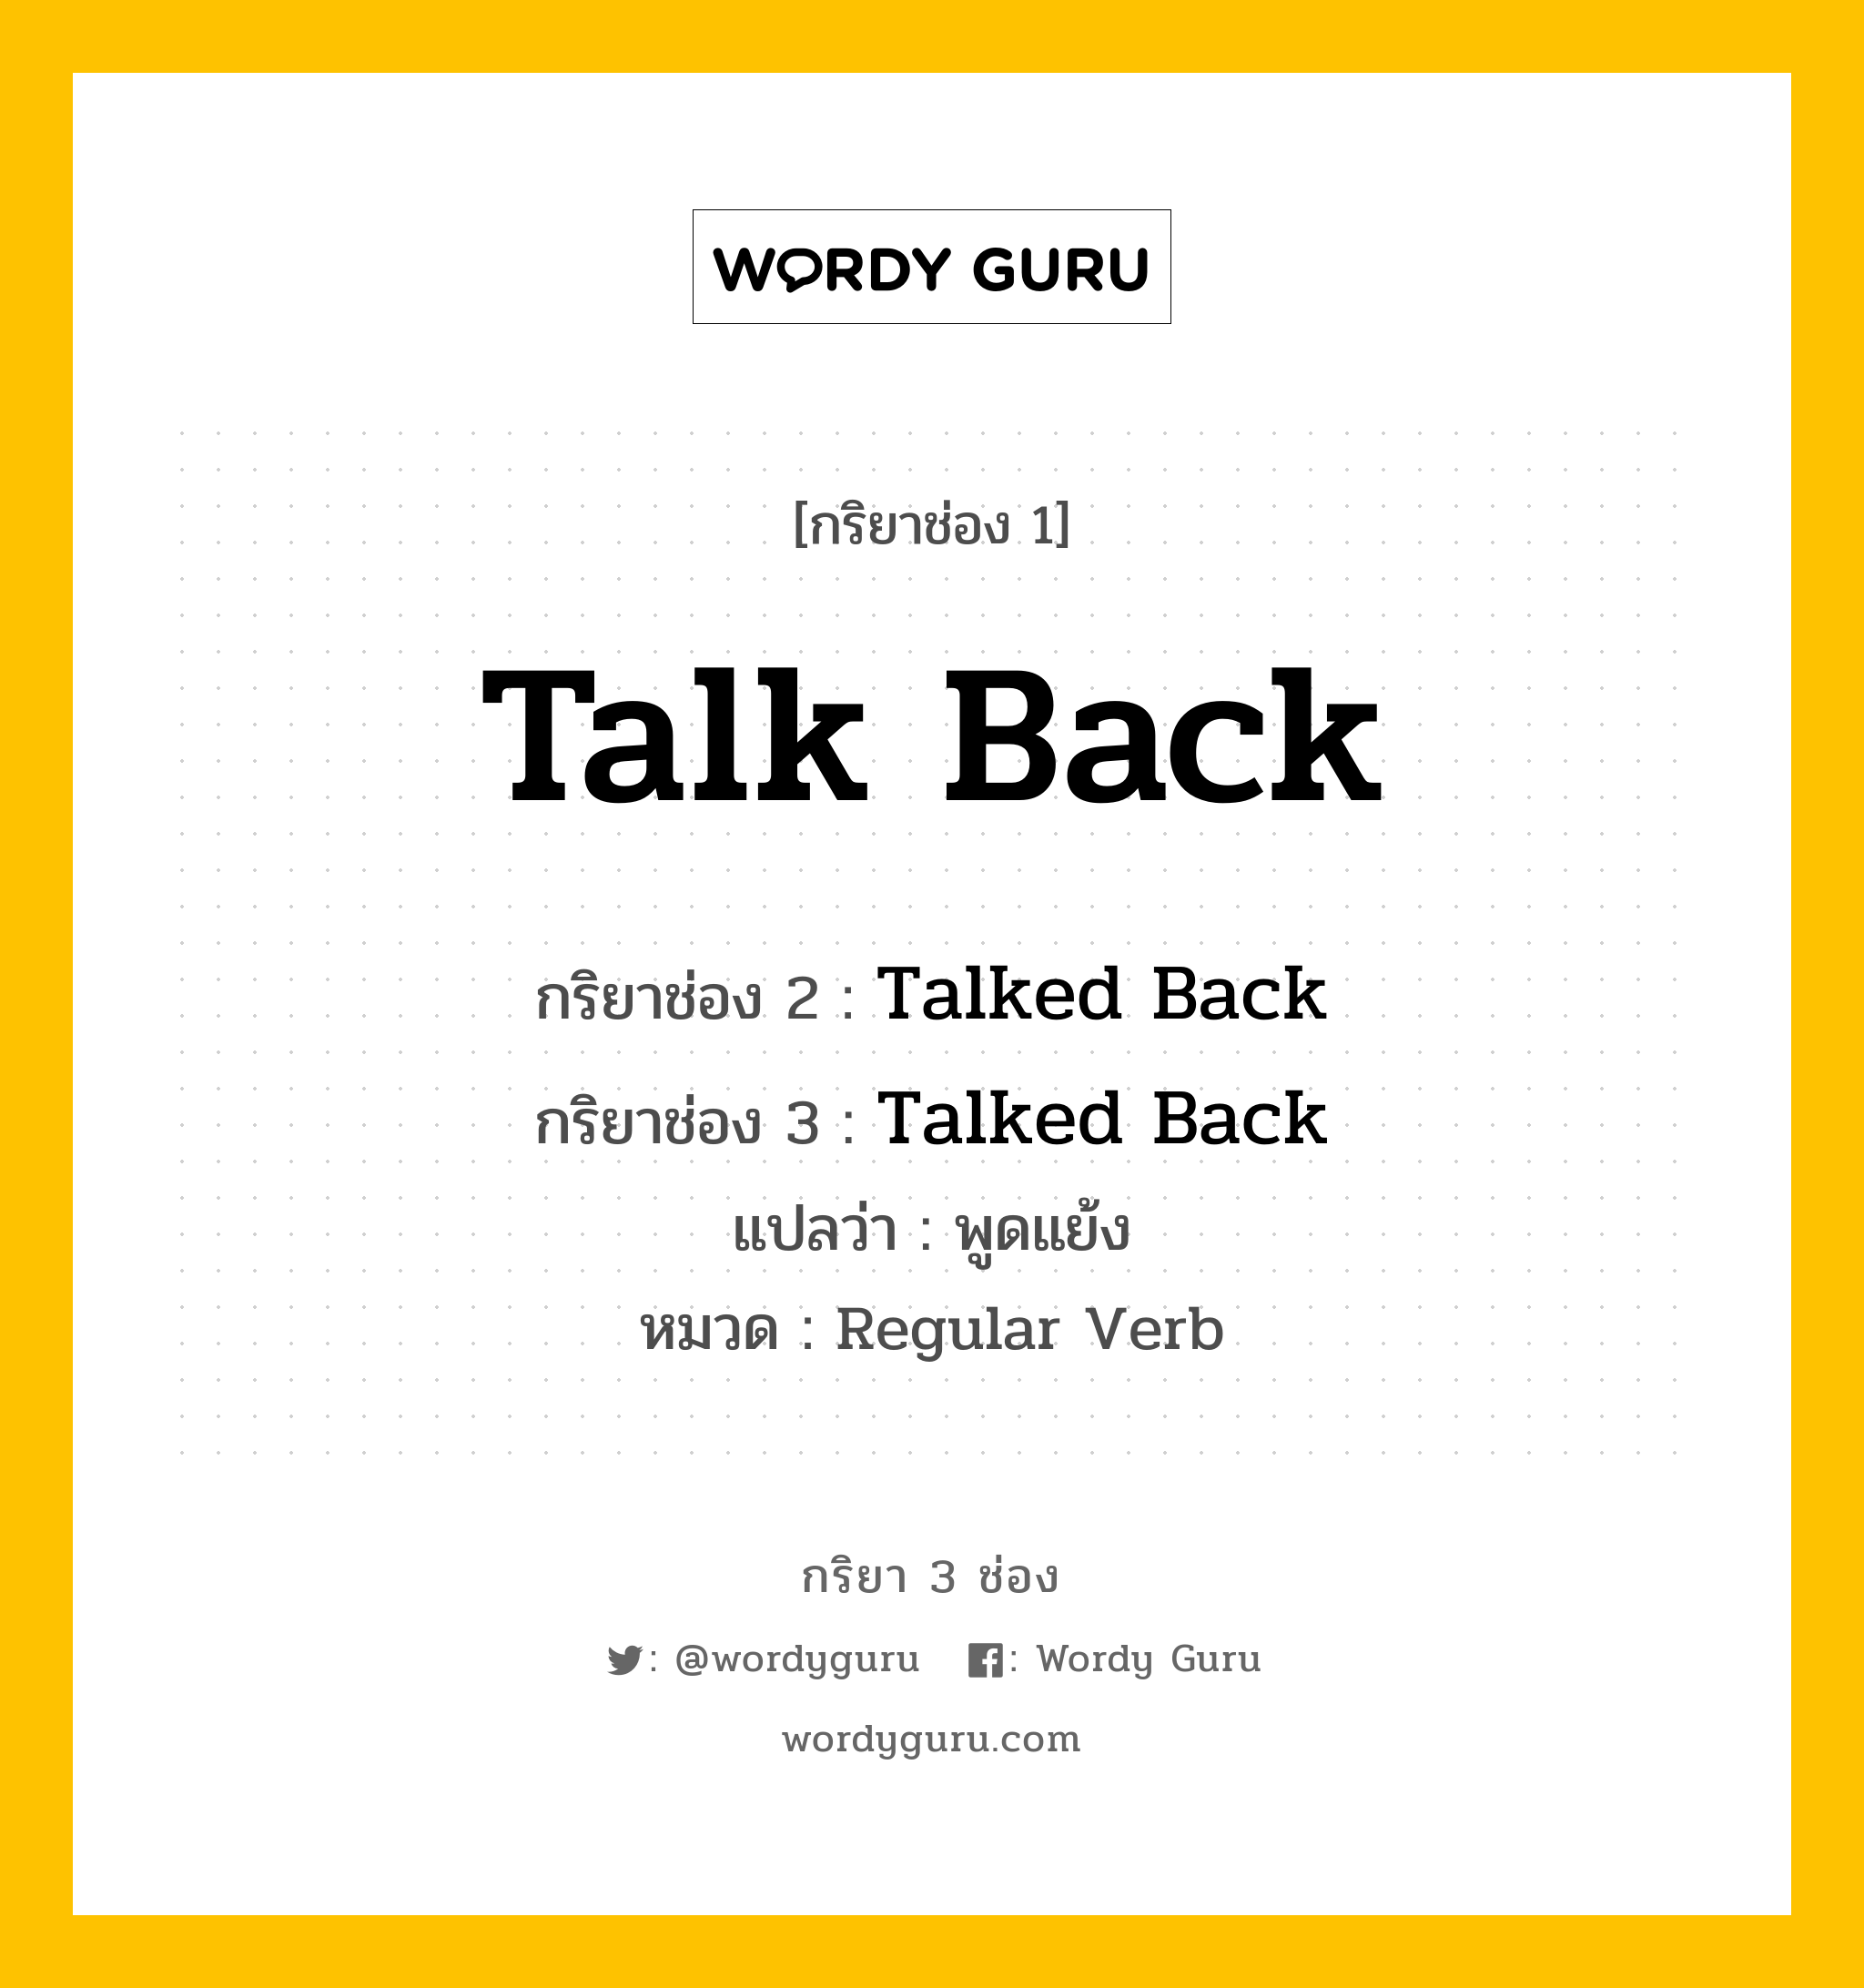 กริยา 3 ช่อง: Talk Back ช่อง 2 Talk Back ช่อง 3 คืออะไร, กริยาช่อง 1 Talk Back กริยาช่อง 2 Talked Back กริยาช่อง 3 Talked Back แปลว่า พูดแย้ง หมวด Regular Verb หมวด Regular Verb